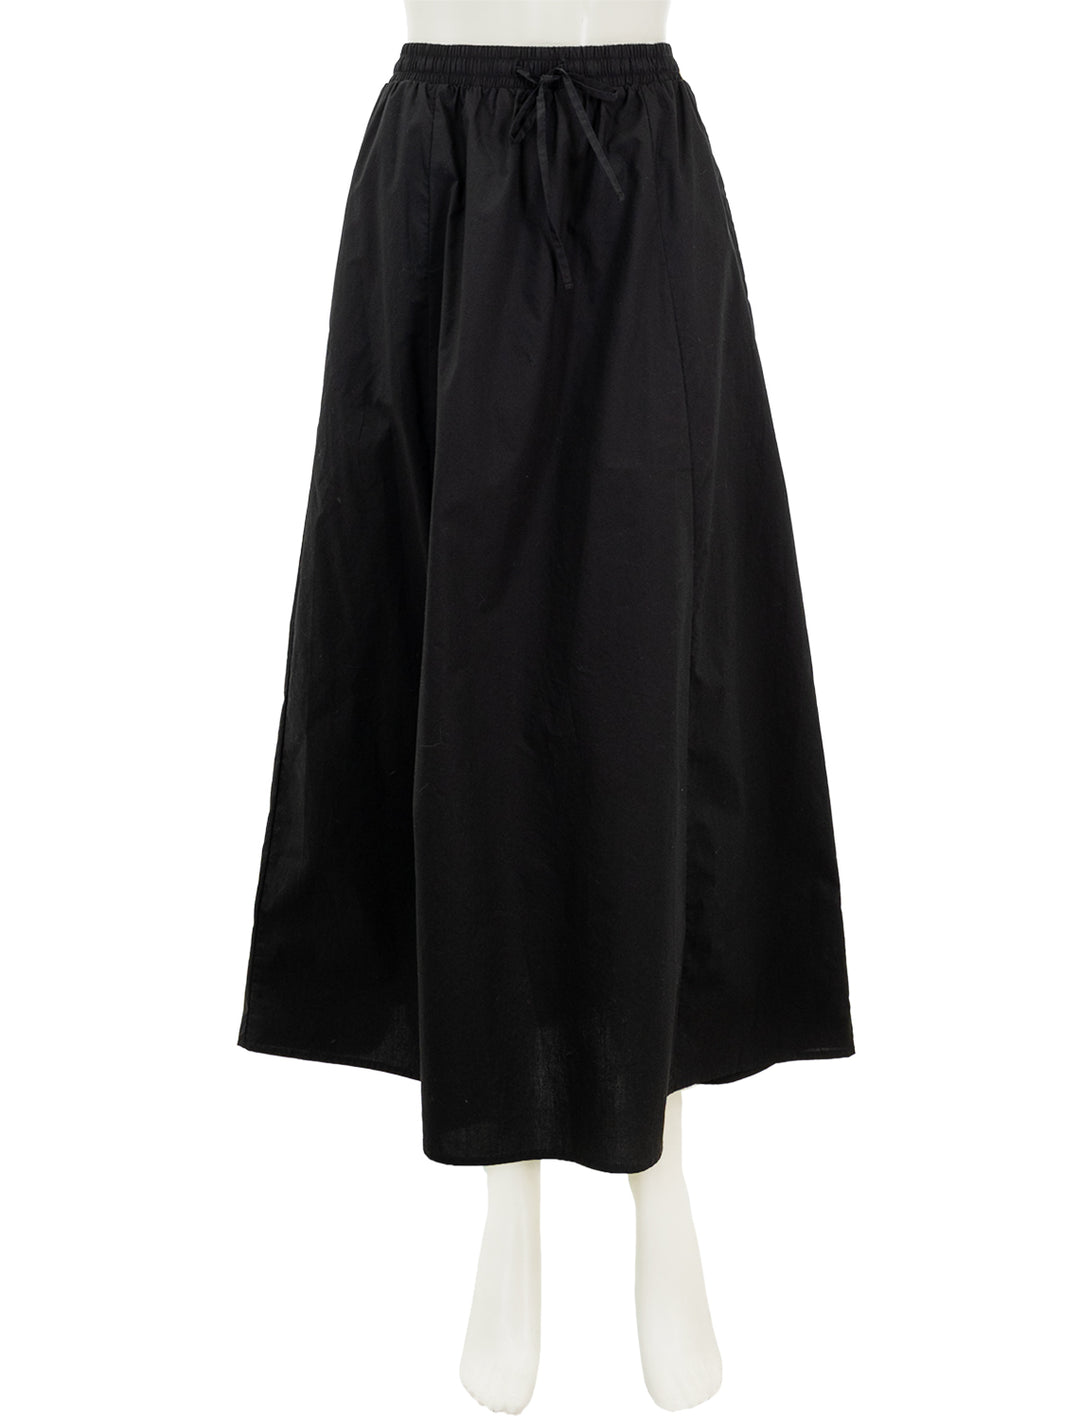 Front view of Steve Madden's sunny skirt in black.